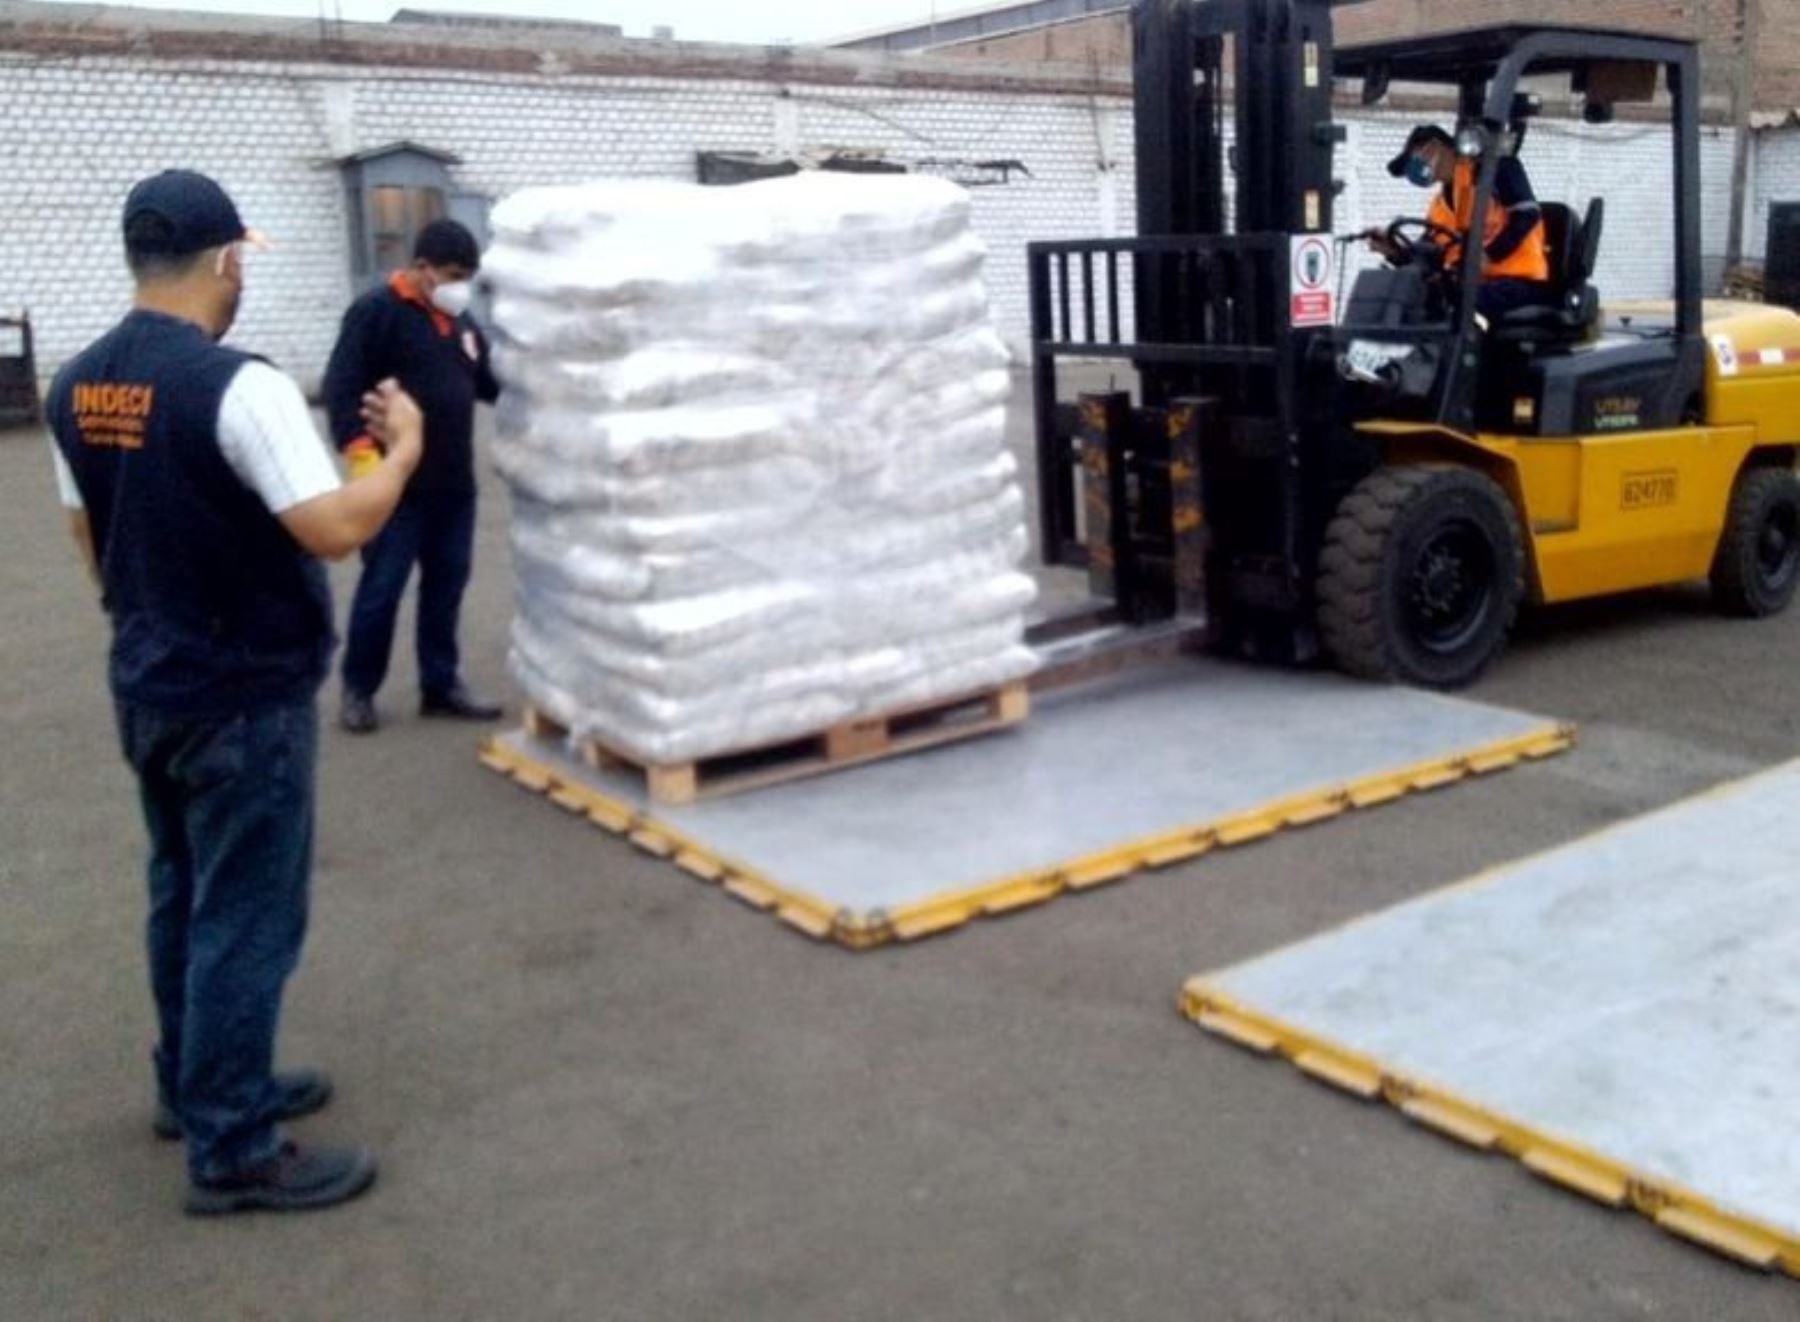 El Ministerio de Vivienda anunció que inspeccionará la entrega de 3.5 toneladas de alimentos, donados por Operación Donaciones, a los comedores populares de Puno. ANDINA/Difusión